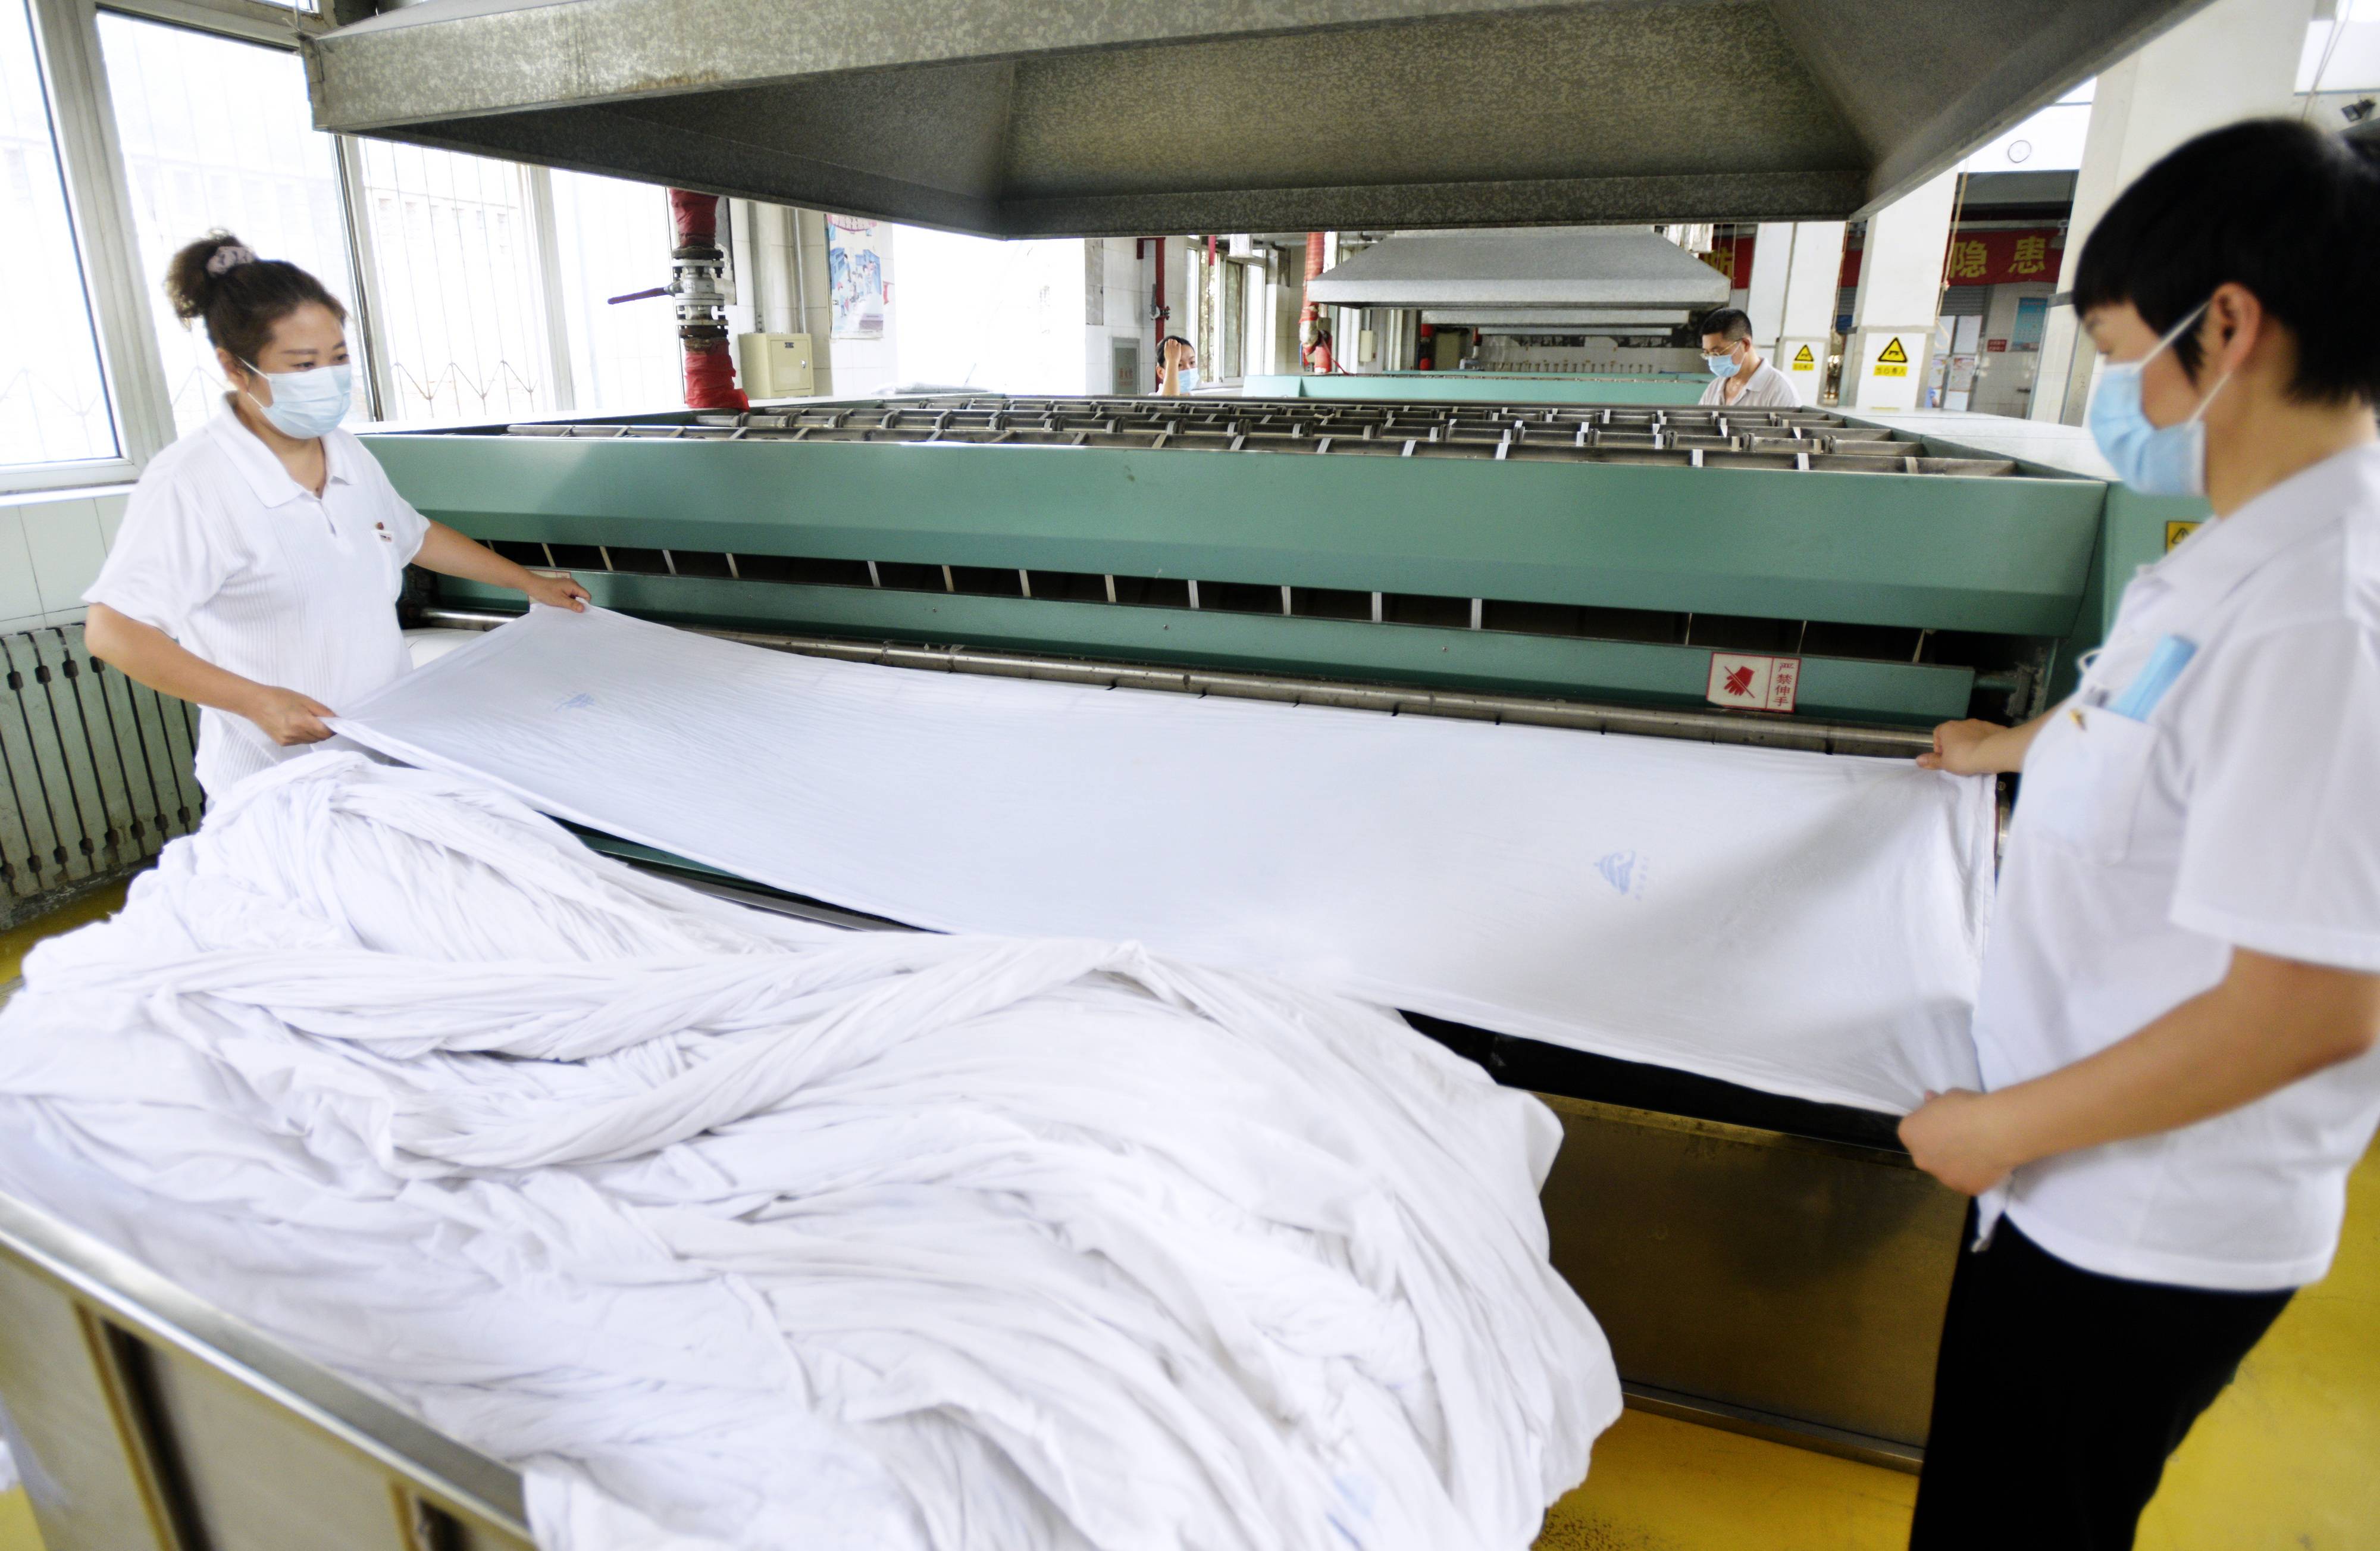 8月23日,北京客运段洗涤车间的工作人员在对洗涤后的卧具进行高温熨烫